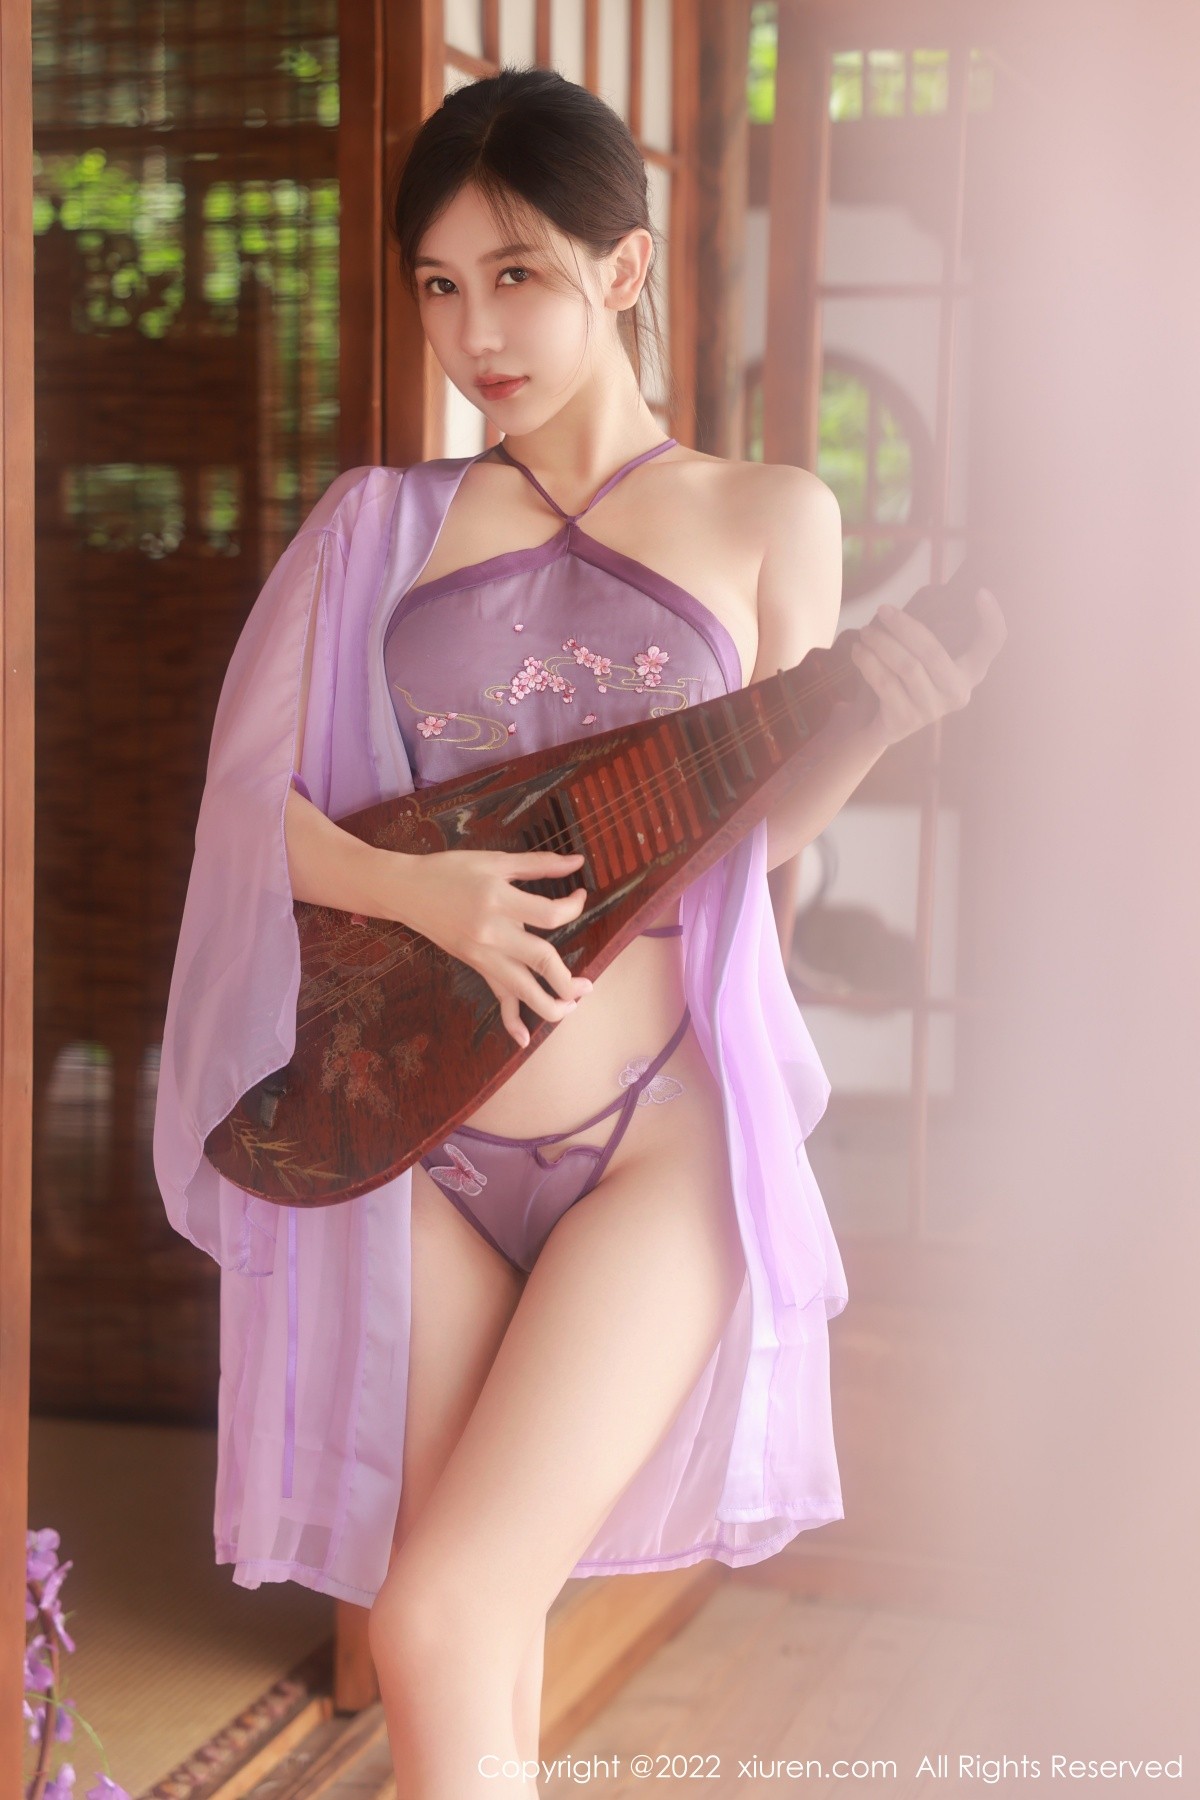 模特尹甜甜性感淡紫色轻透薄纱古装秀翘臀美腿完美诱惑写真